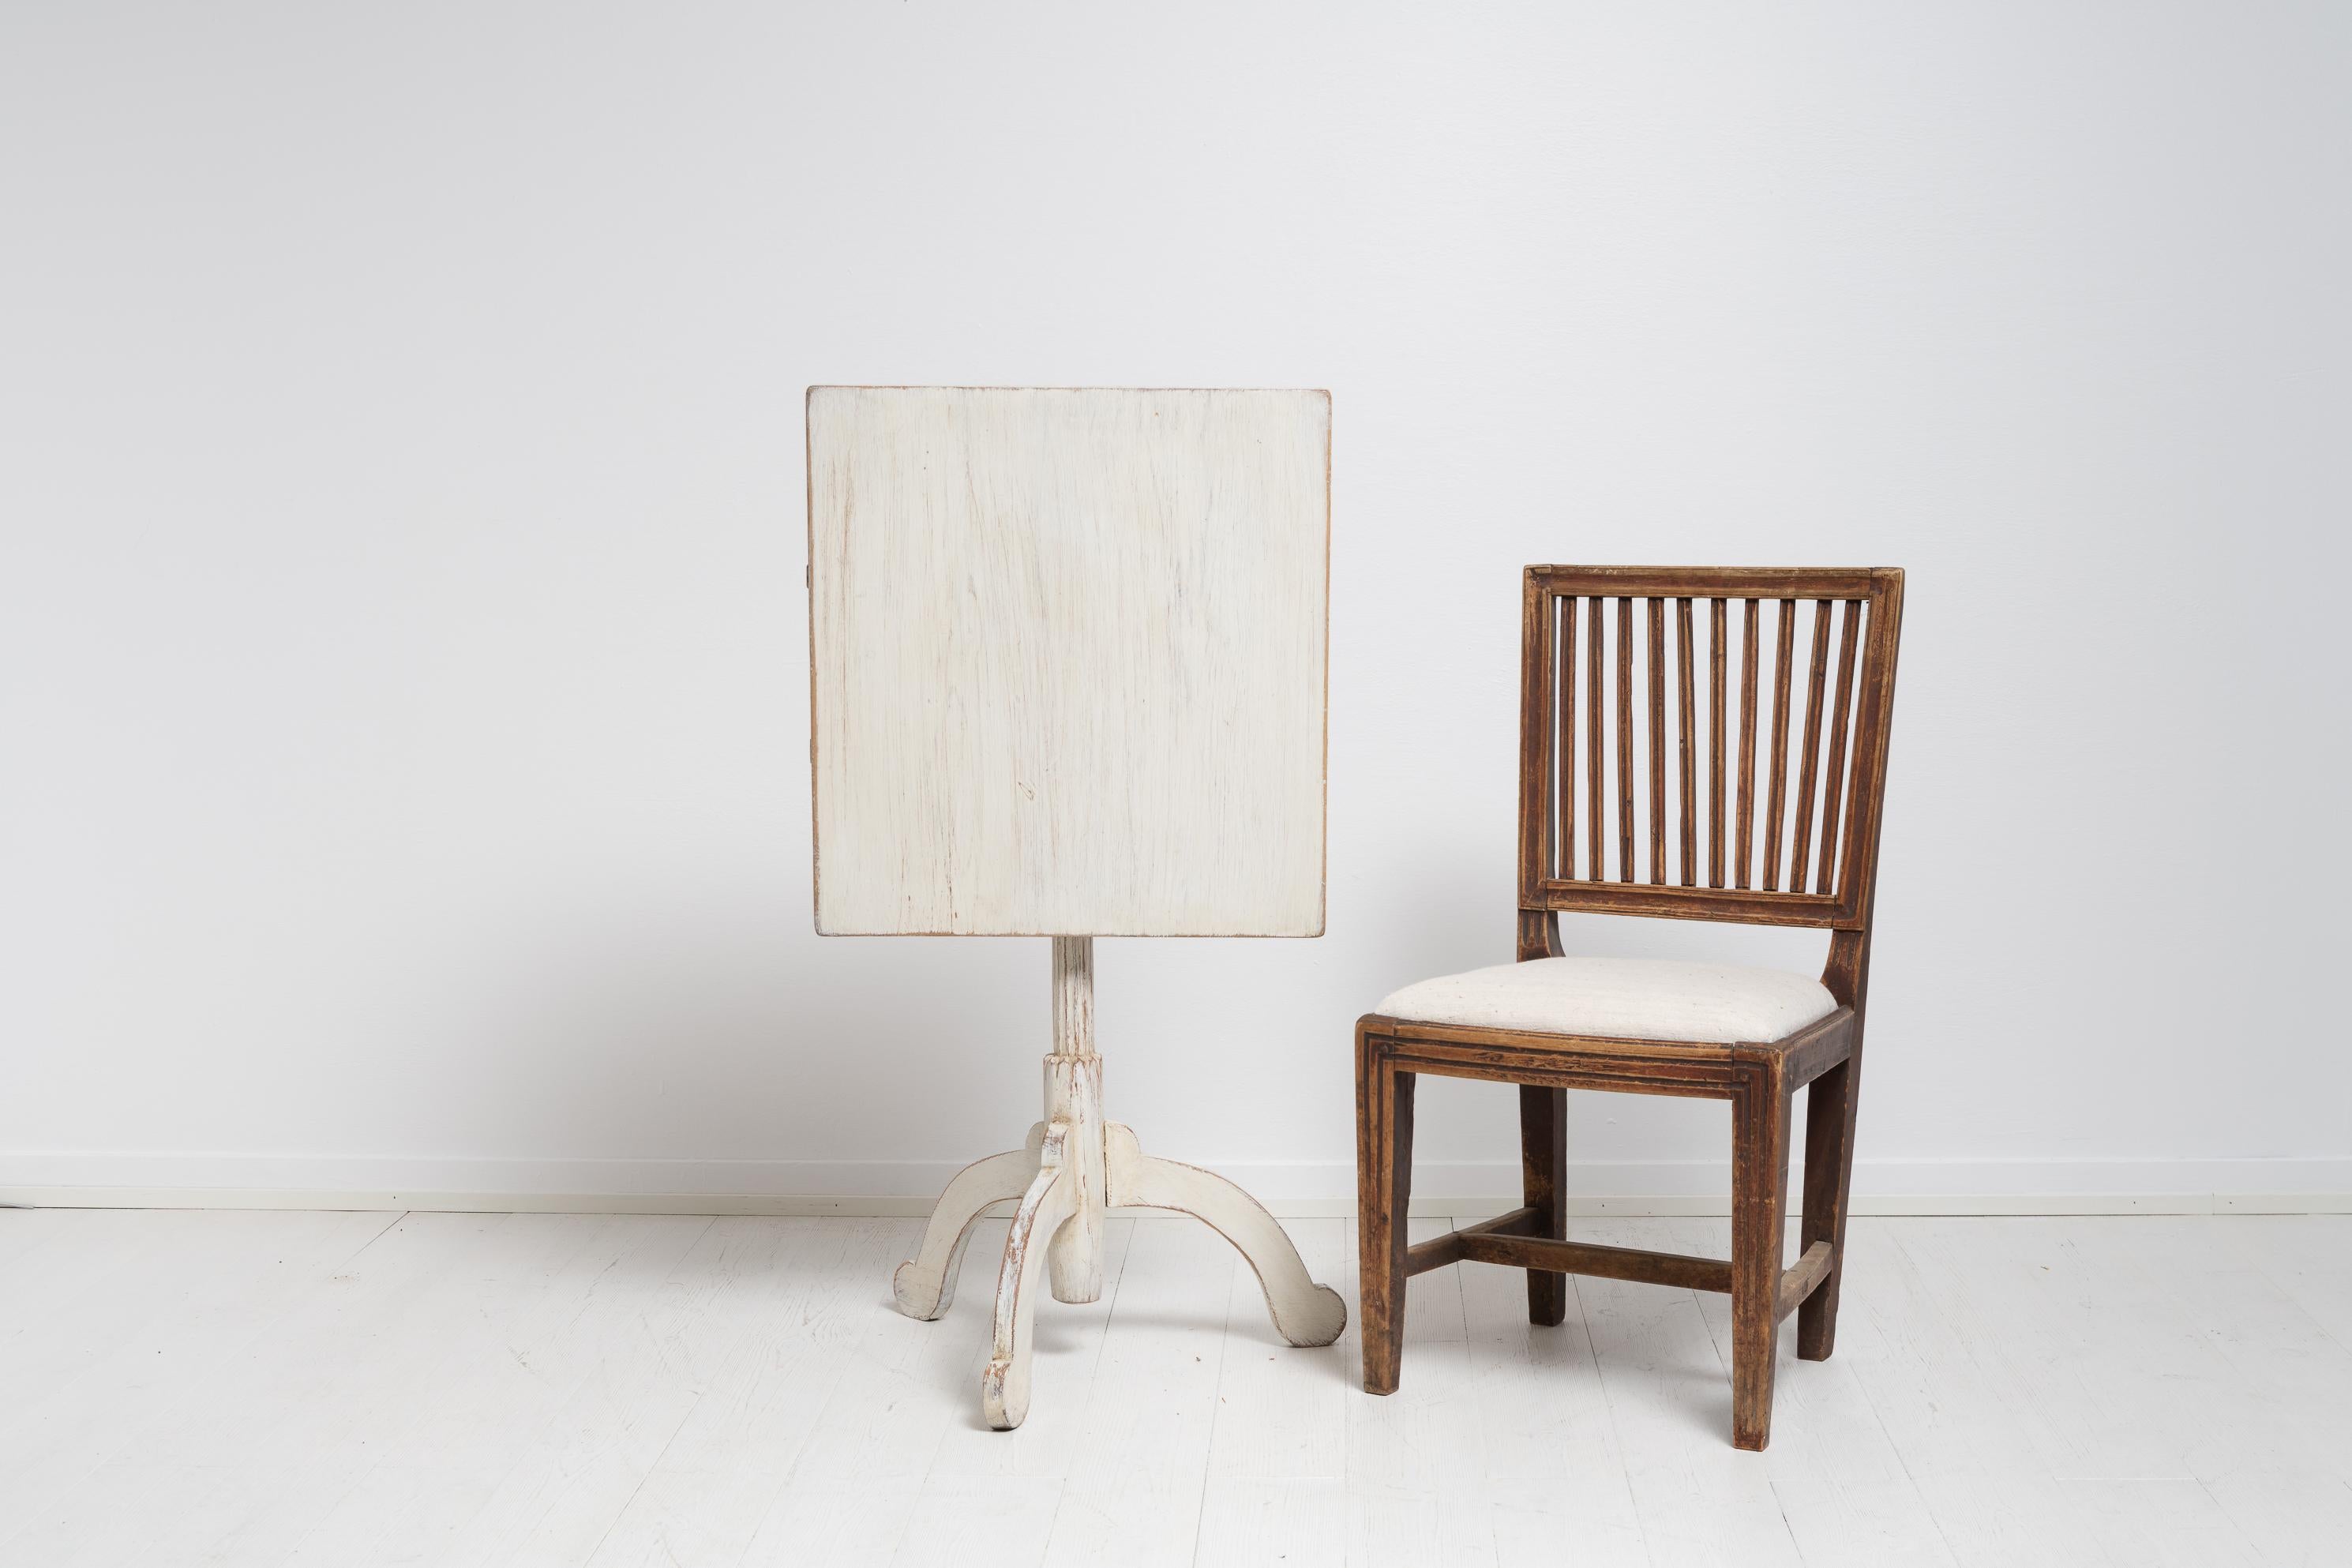 Nordschwedischer Säulentisch mit kippbarer Platte aus Kiefer. Der Tisch besticht durch seine Schlichtheit mit weißer Distressed-Lackierung und rustikalen Details. Der Säulentisch hat eine rechteckige Tischplatte auf einem Säulengestell mit drei